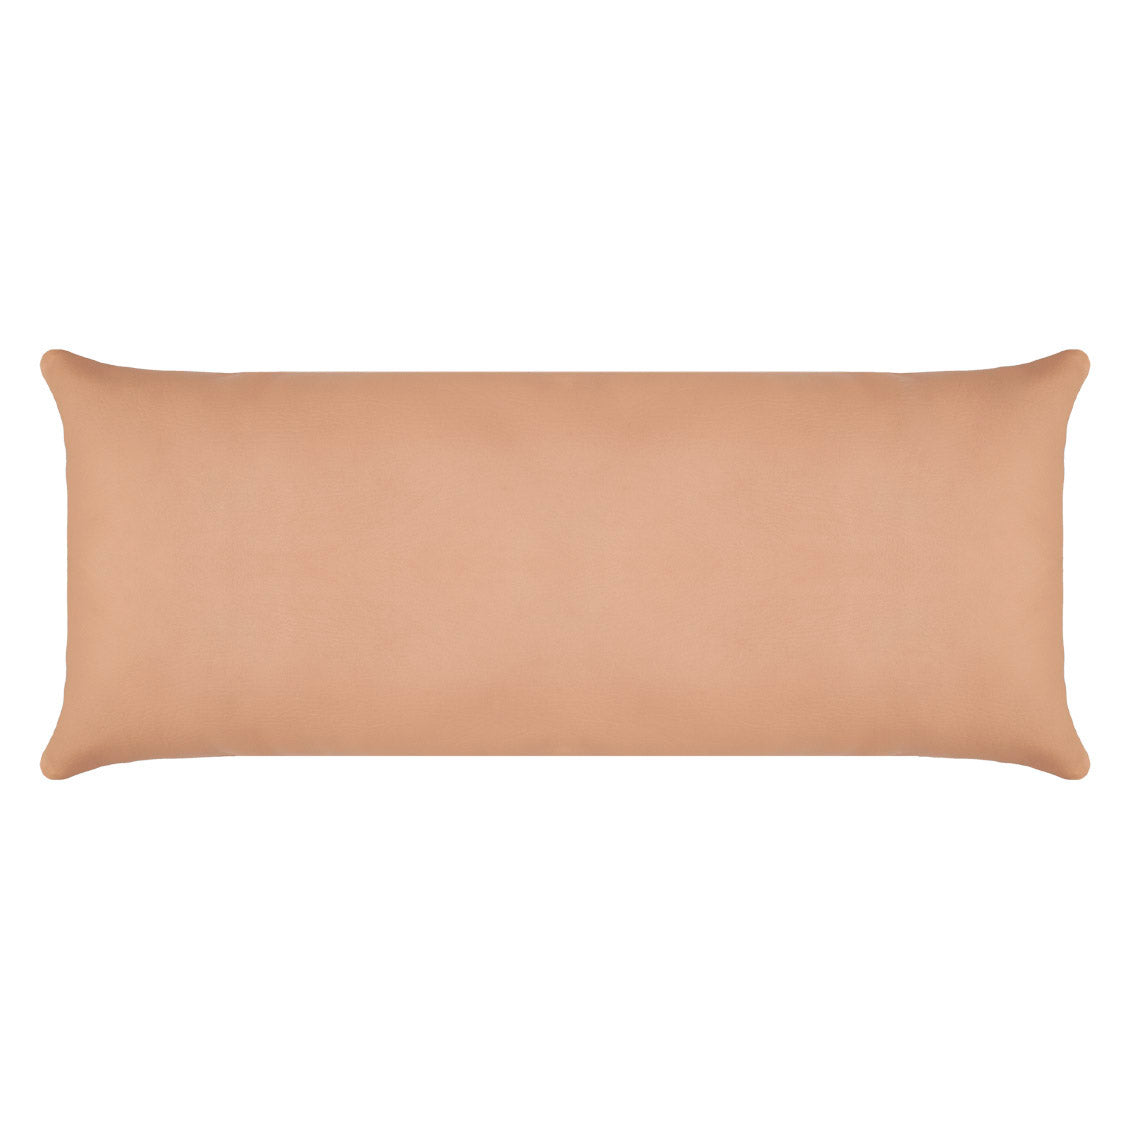 Natural Leather Lumbar Pillow